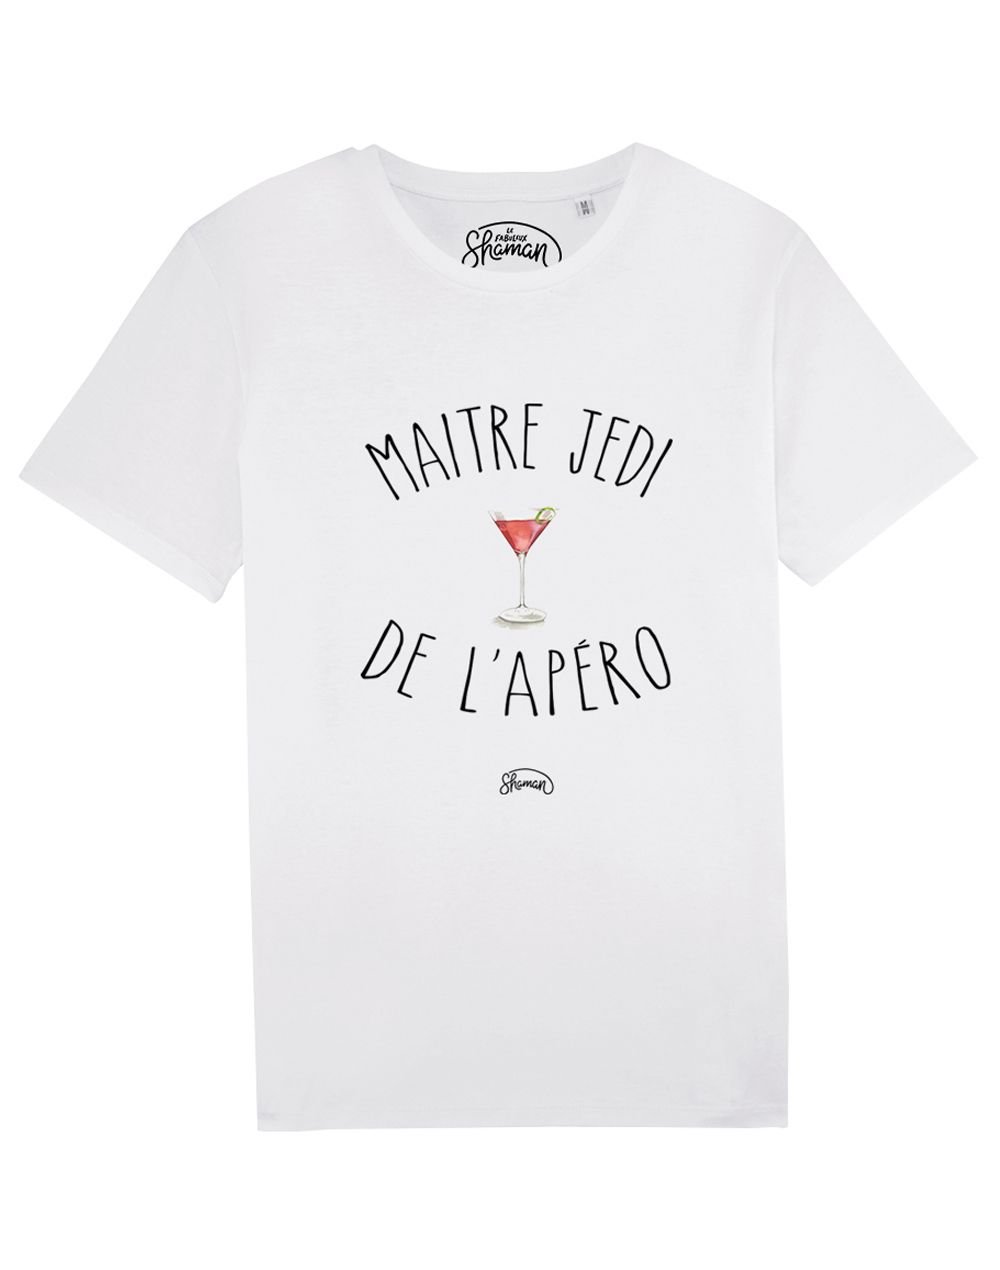 Tee-shirt "Maitre jedi de l'apéro"